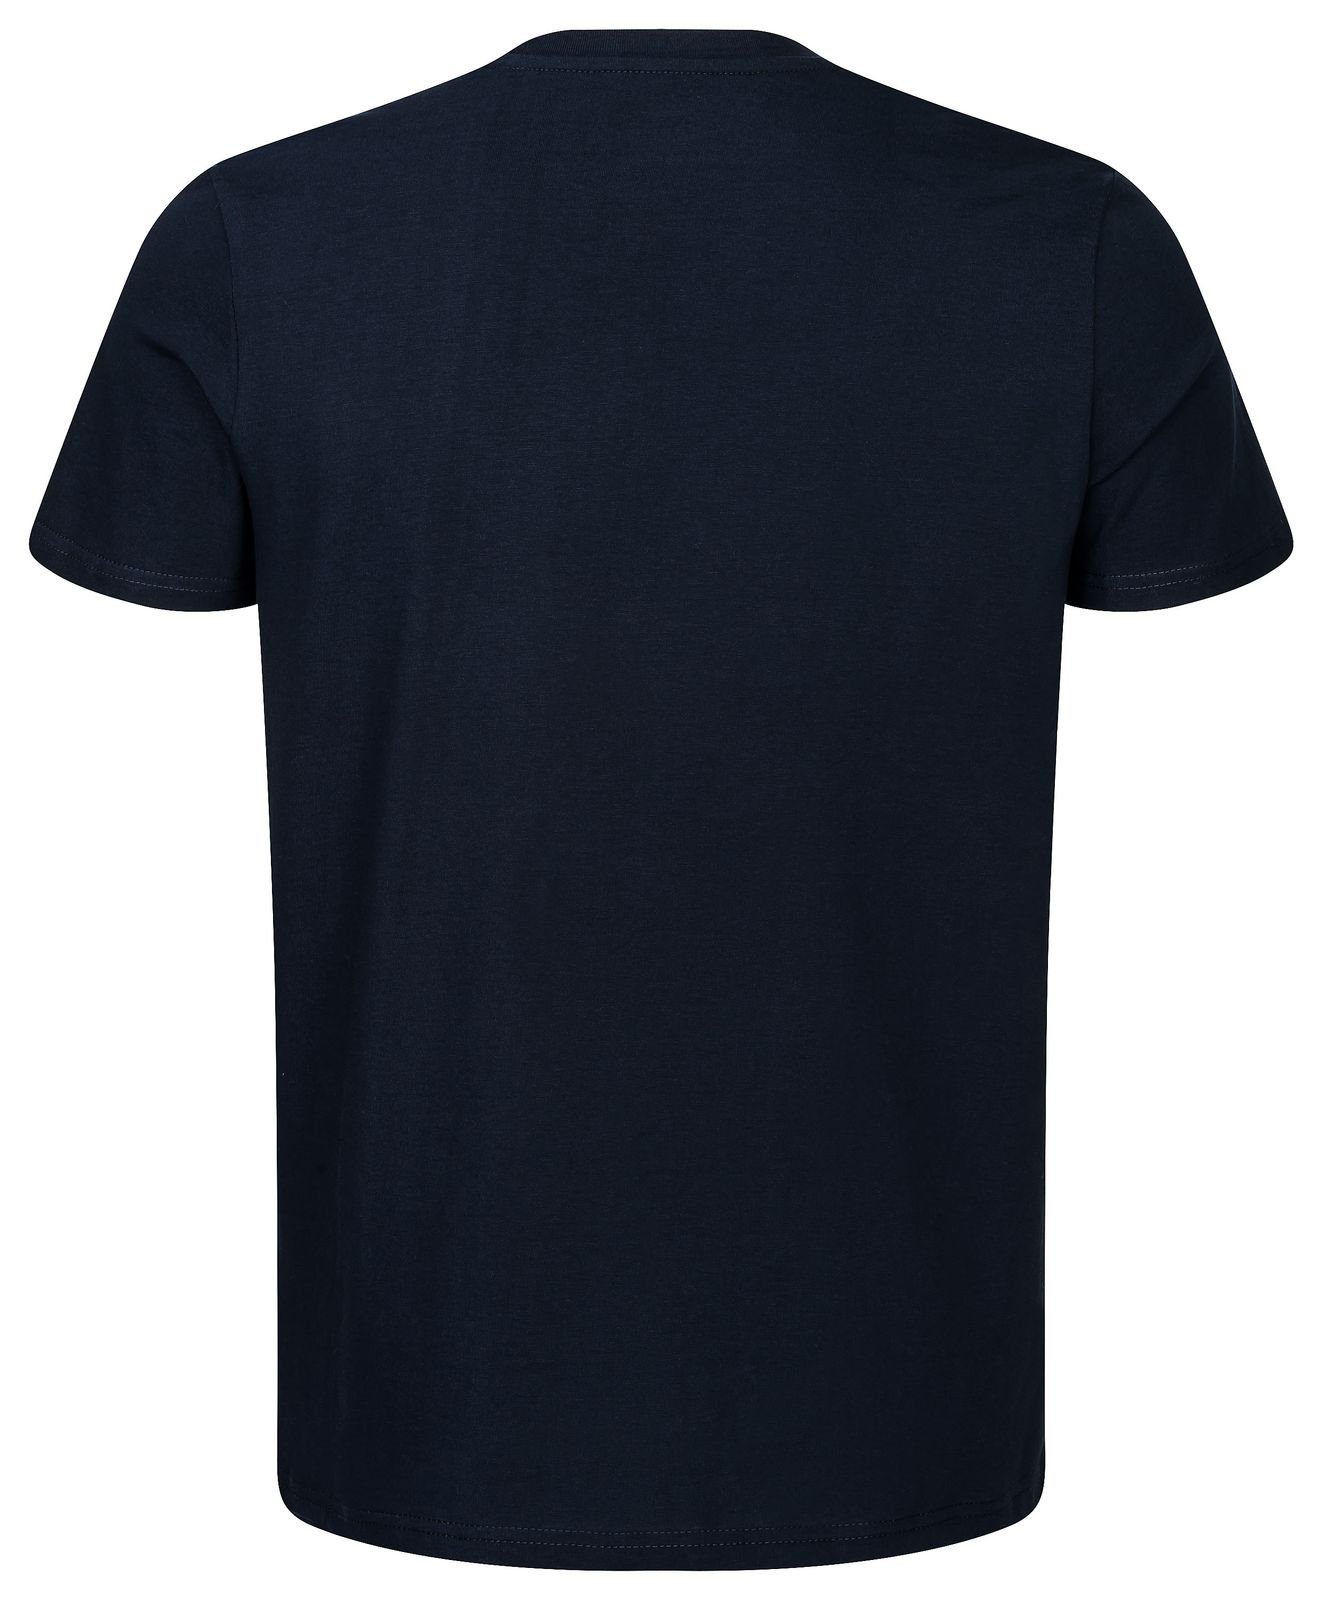 dunkelblau 100% Biobaumwolle & T-Shirt leather Gradnetz basic unisex nachhaltig fair